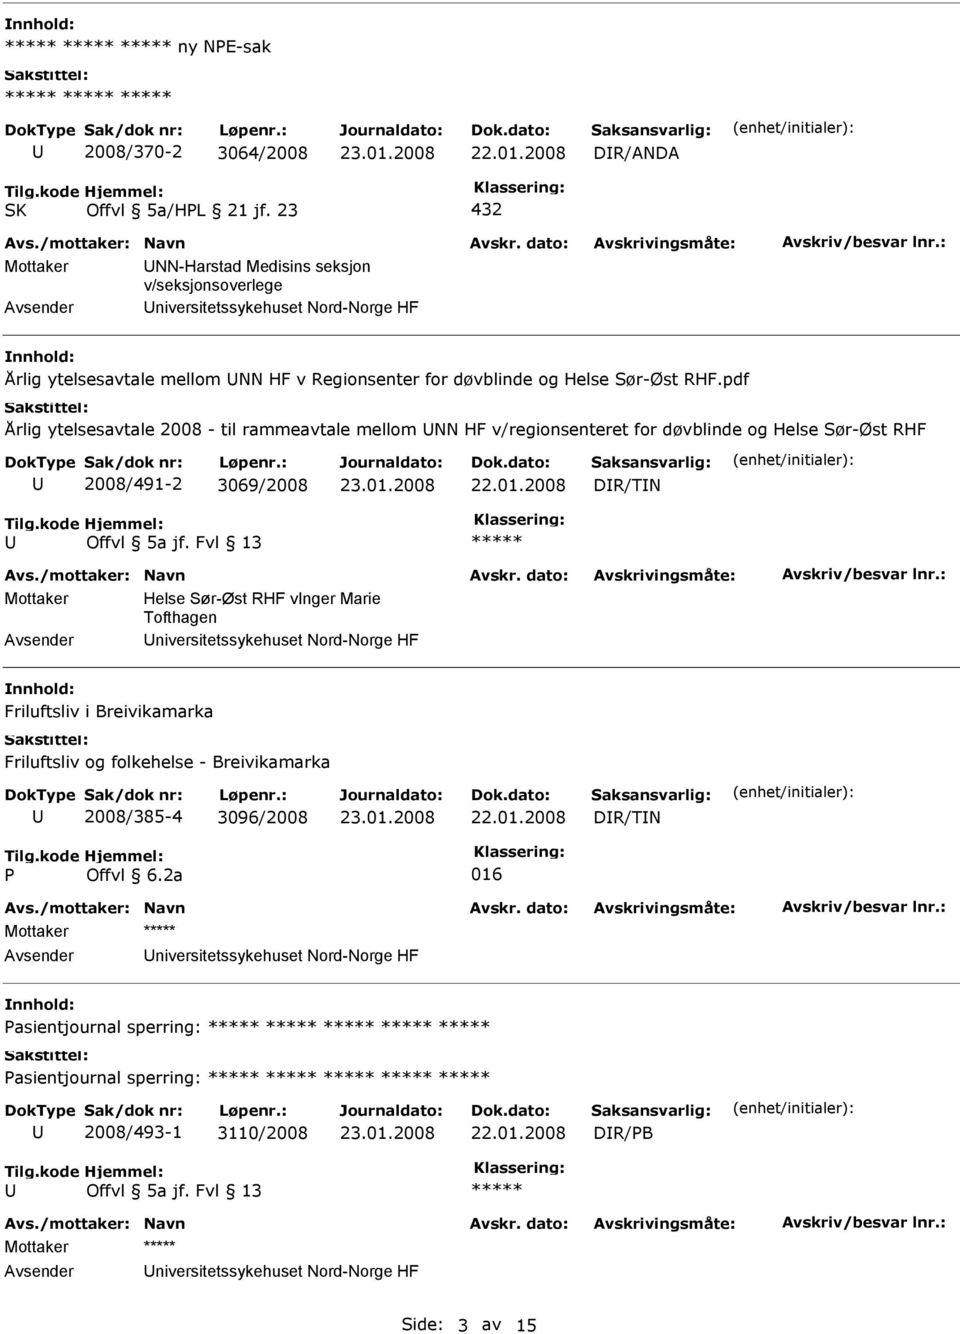 pdf Årlig ytelsesavtale 2008 - til rammeavtale mellom NN HF v/regionsenteret for døvblinde og Helse Sør-Øst RHF 2008/491-2 3069/2008 DR/TN Mottaker Helse Sør-Øst RHF vnger Marie